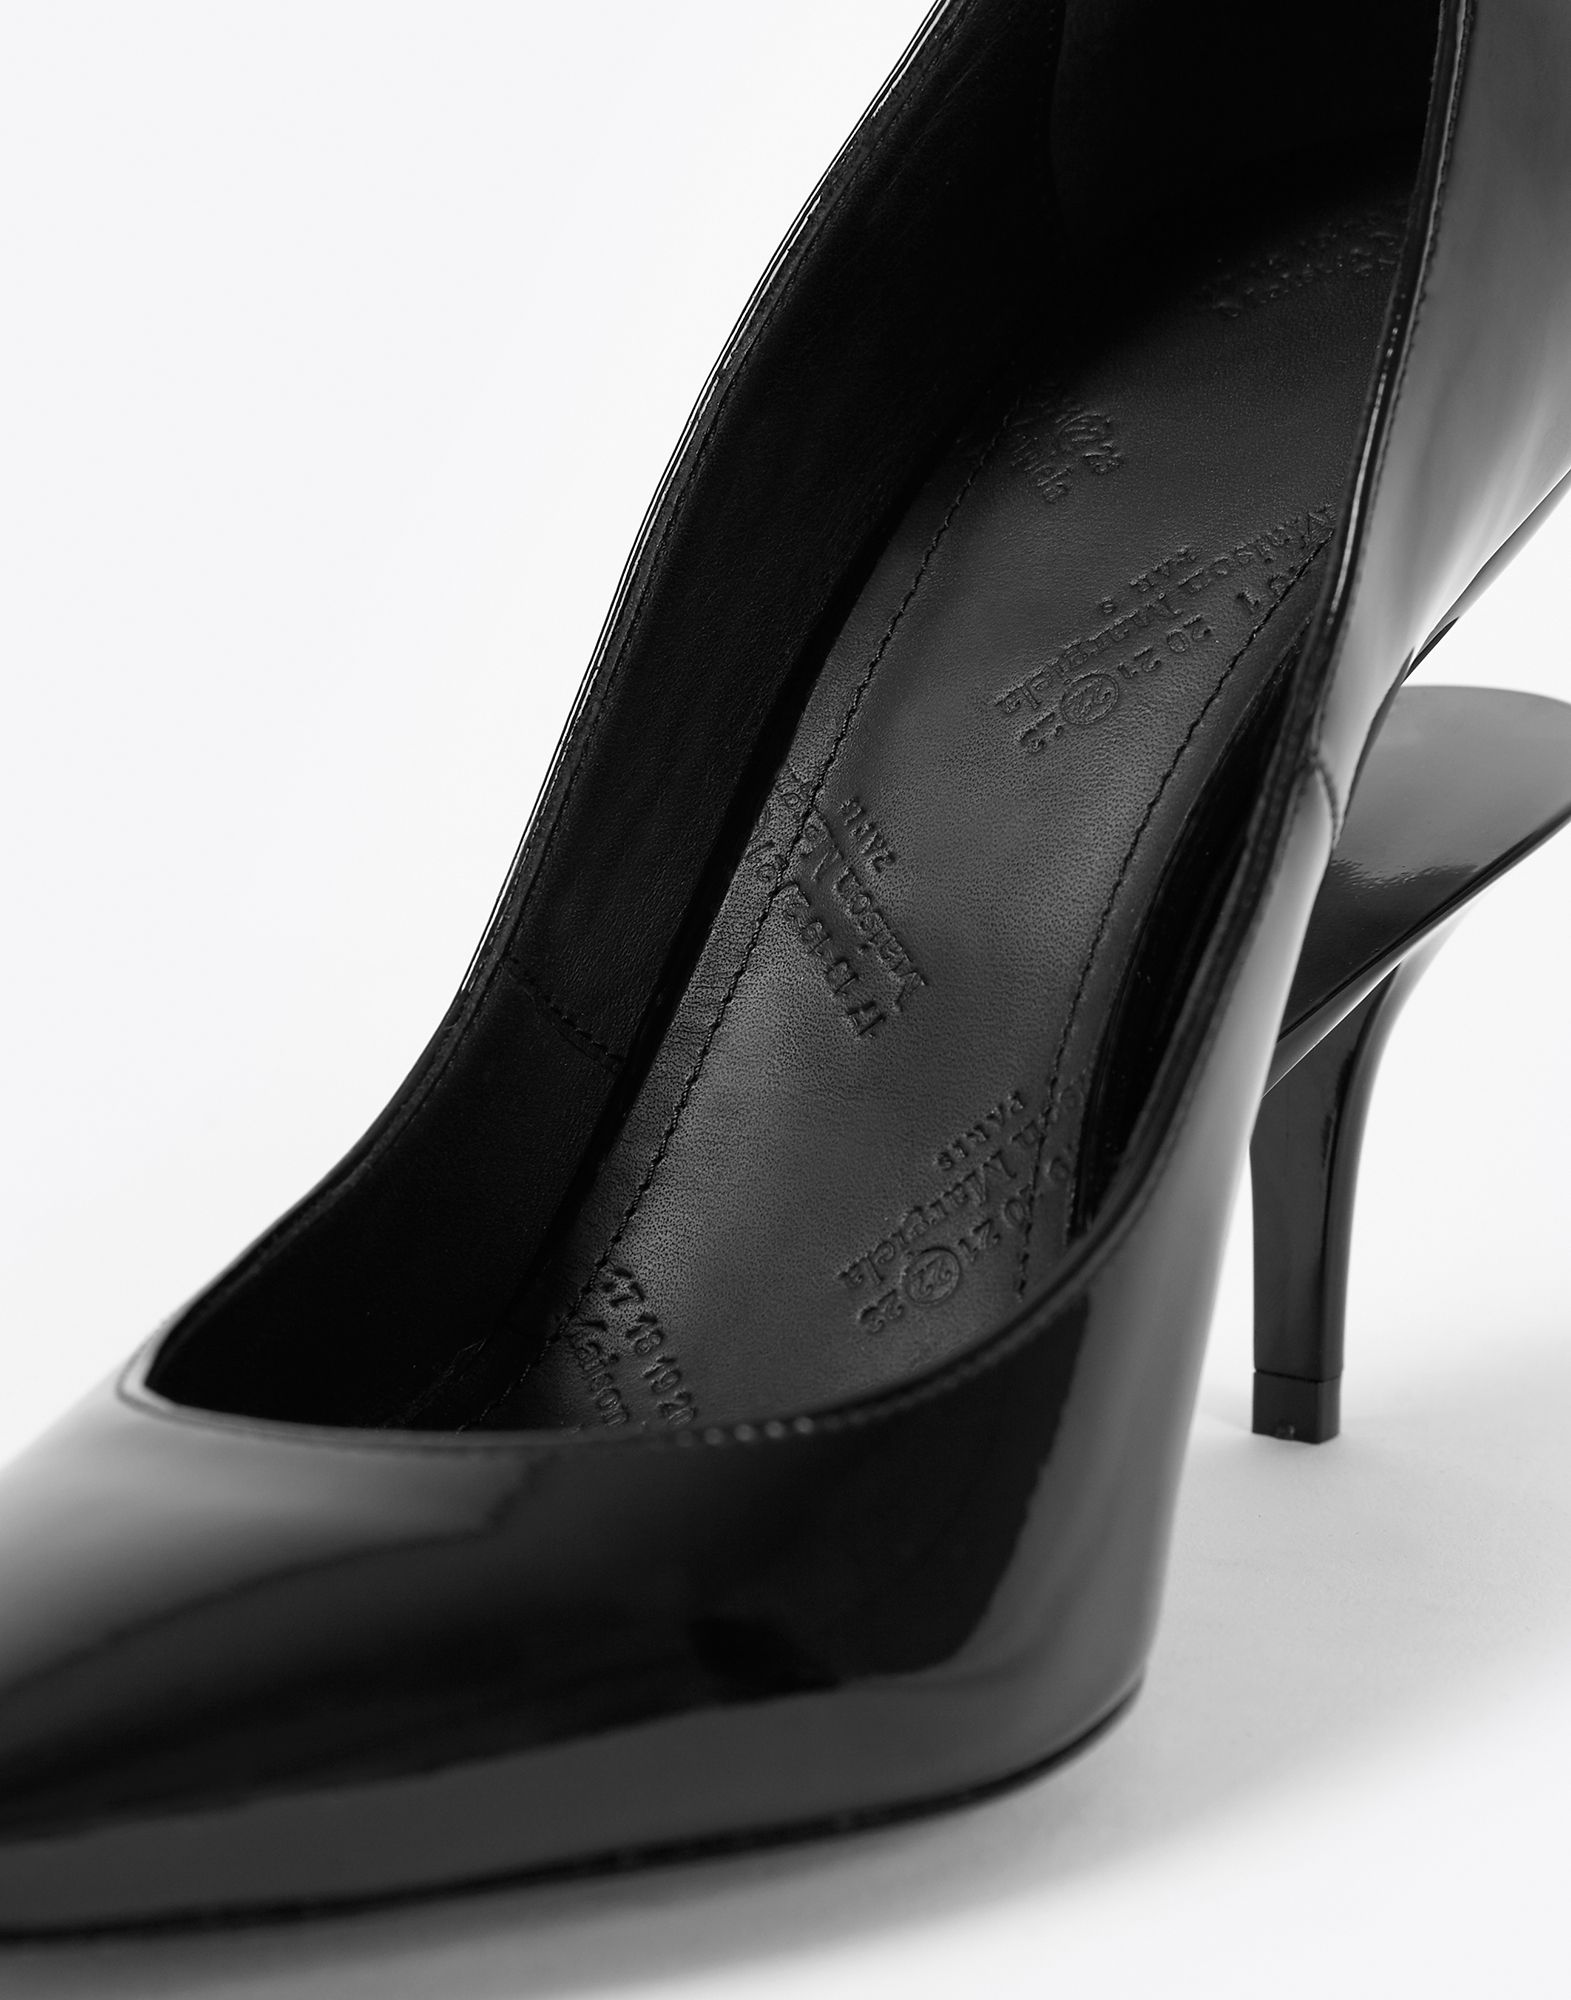 Maison Margiela Black Patent Pumps With a Cutout Heel Women | Maison ...